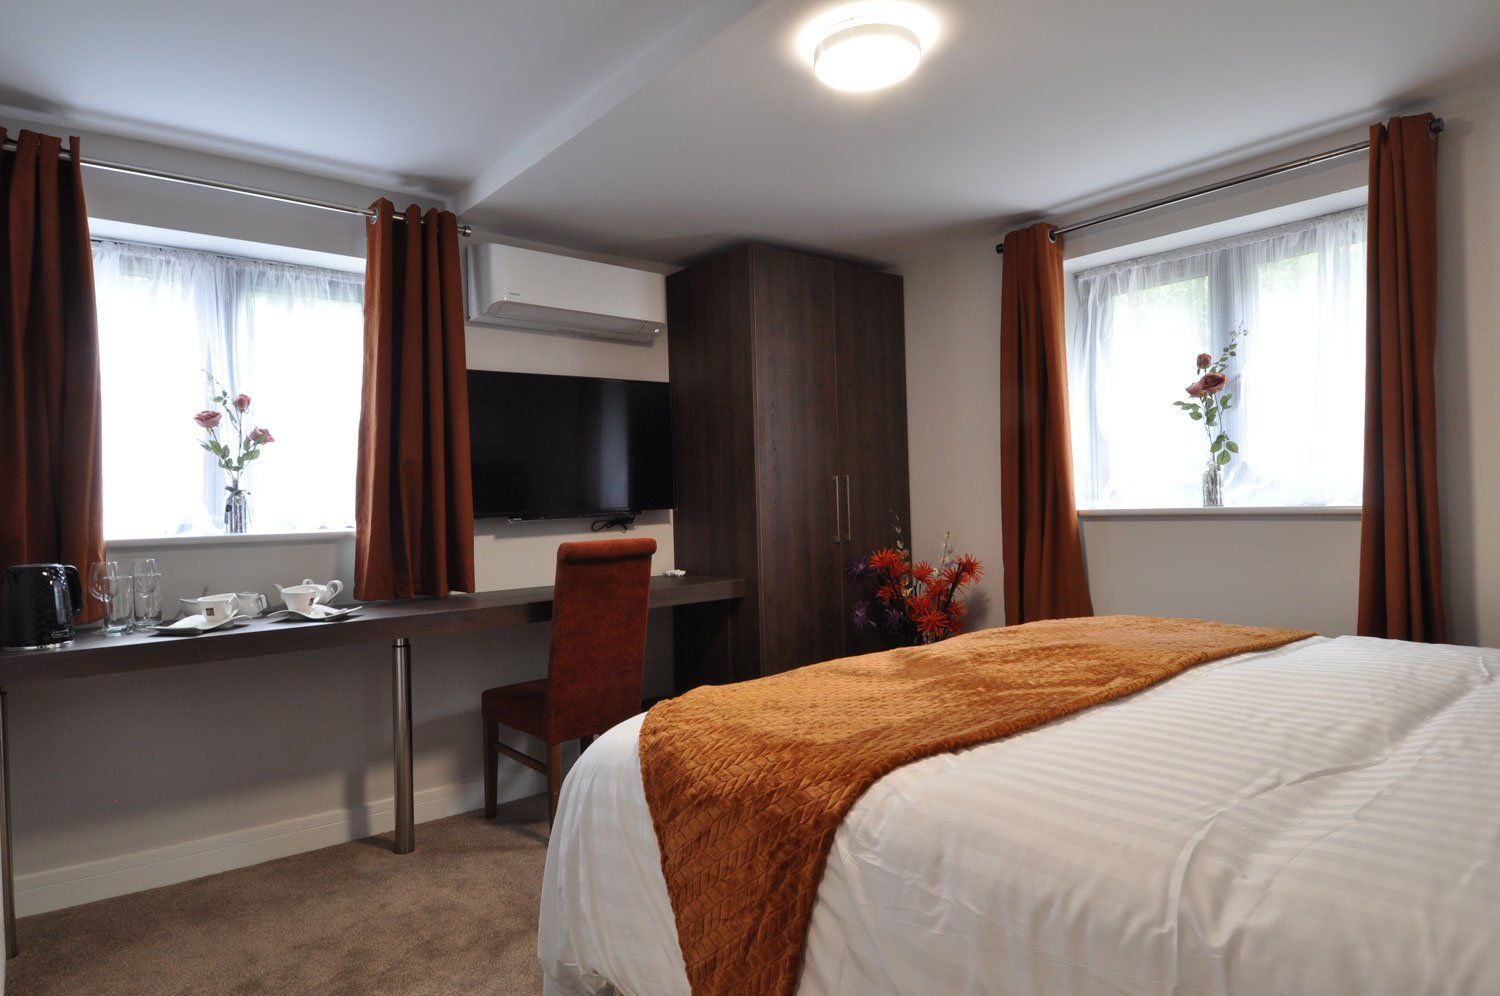 King Hotel Tenterden - Queen Room